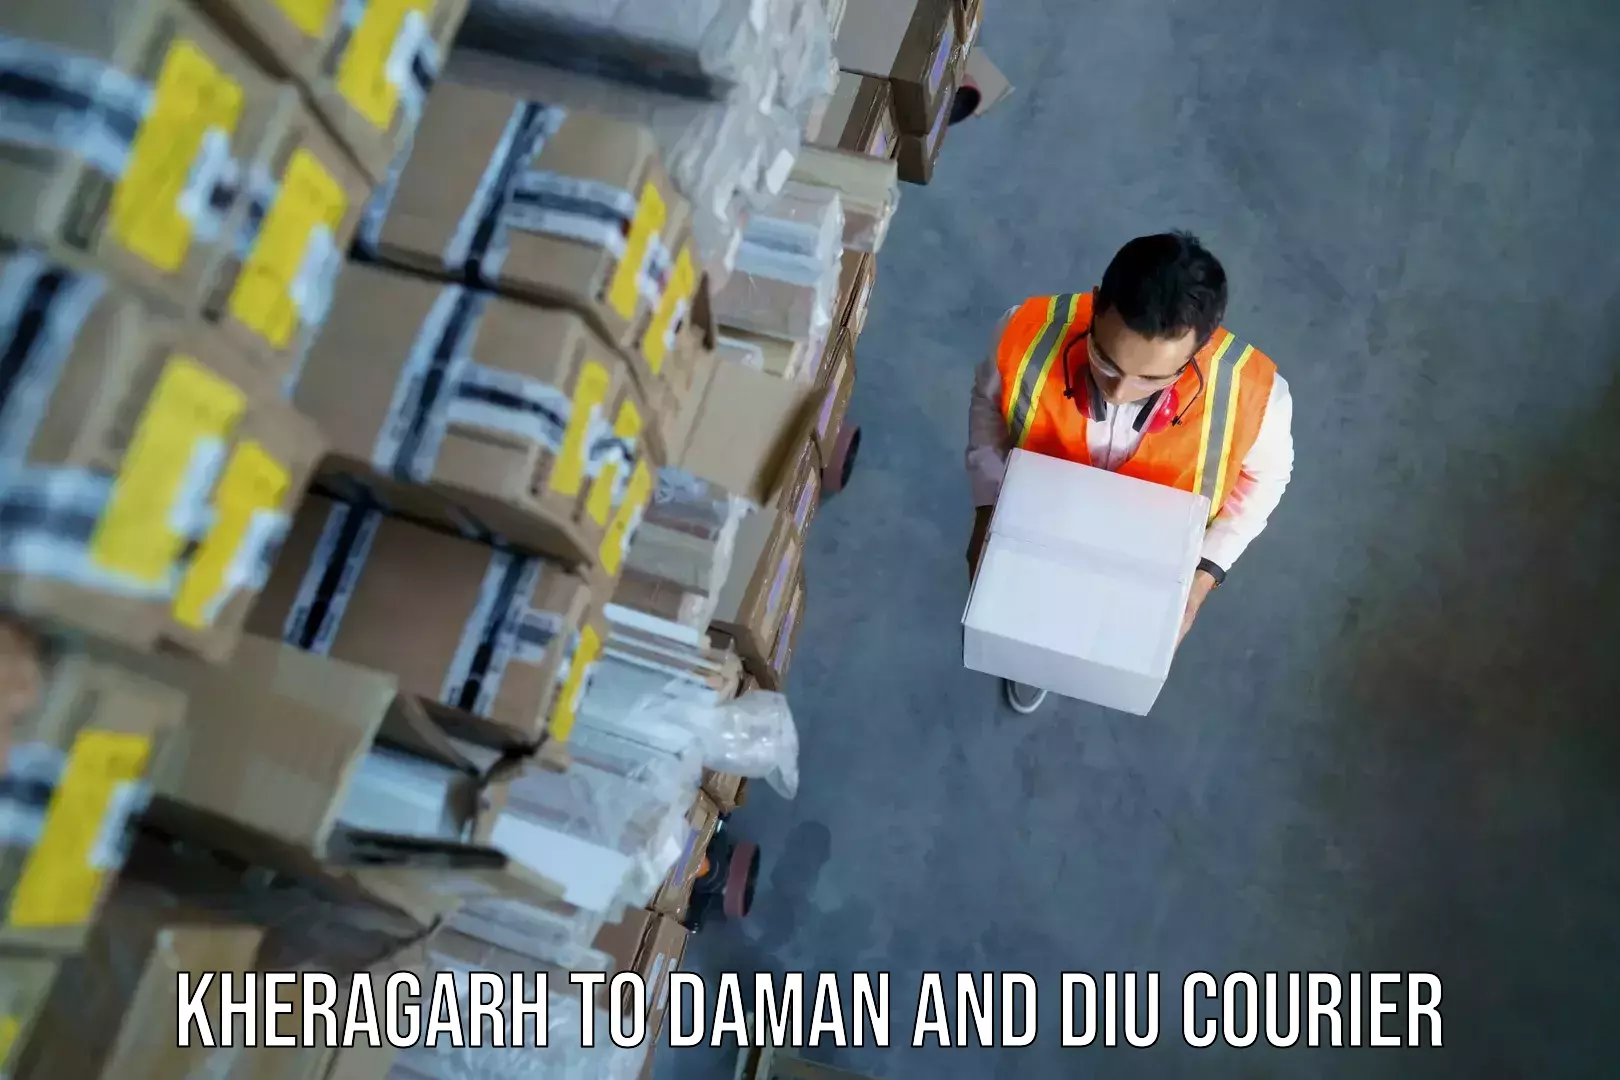 Baggage shipping schedule Kheragarh to Daman